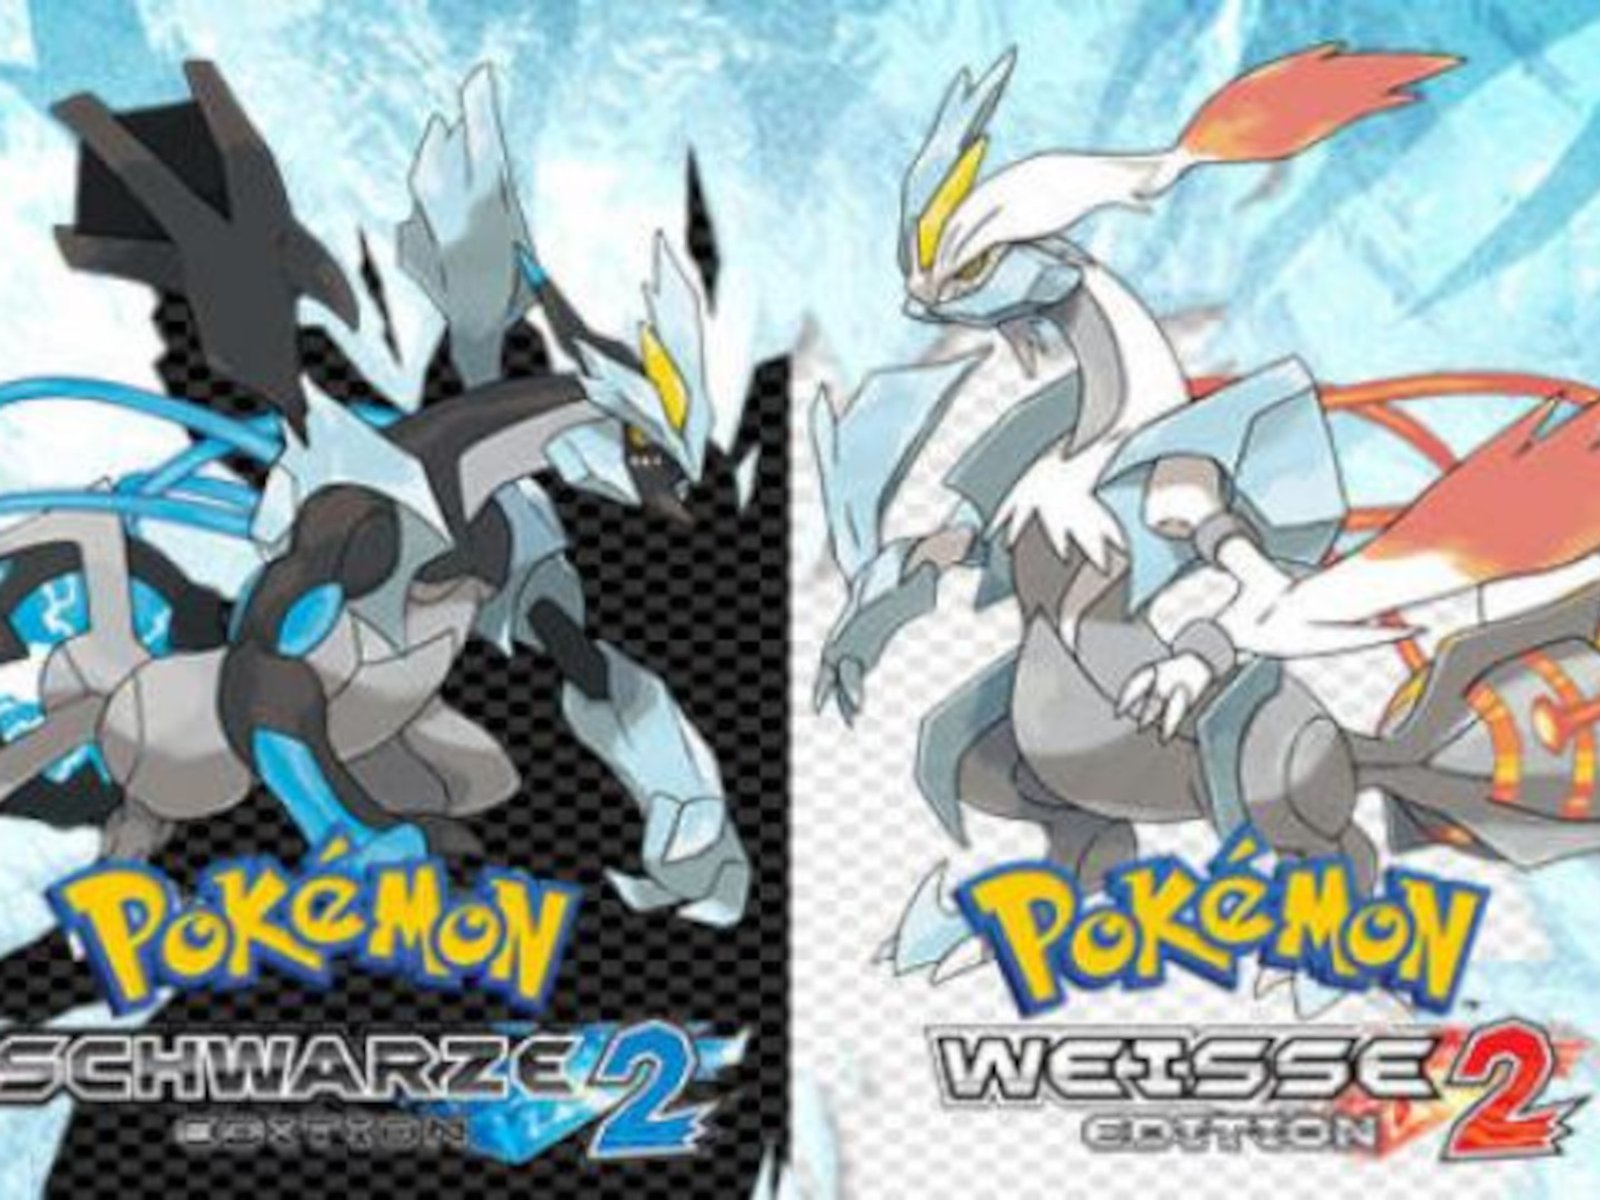 Pokémon Schwarz 2: Cheats und Action Replay Codes